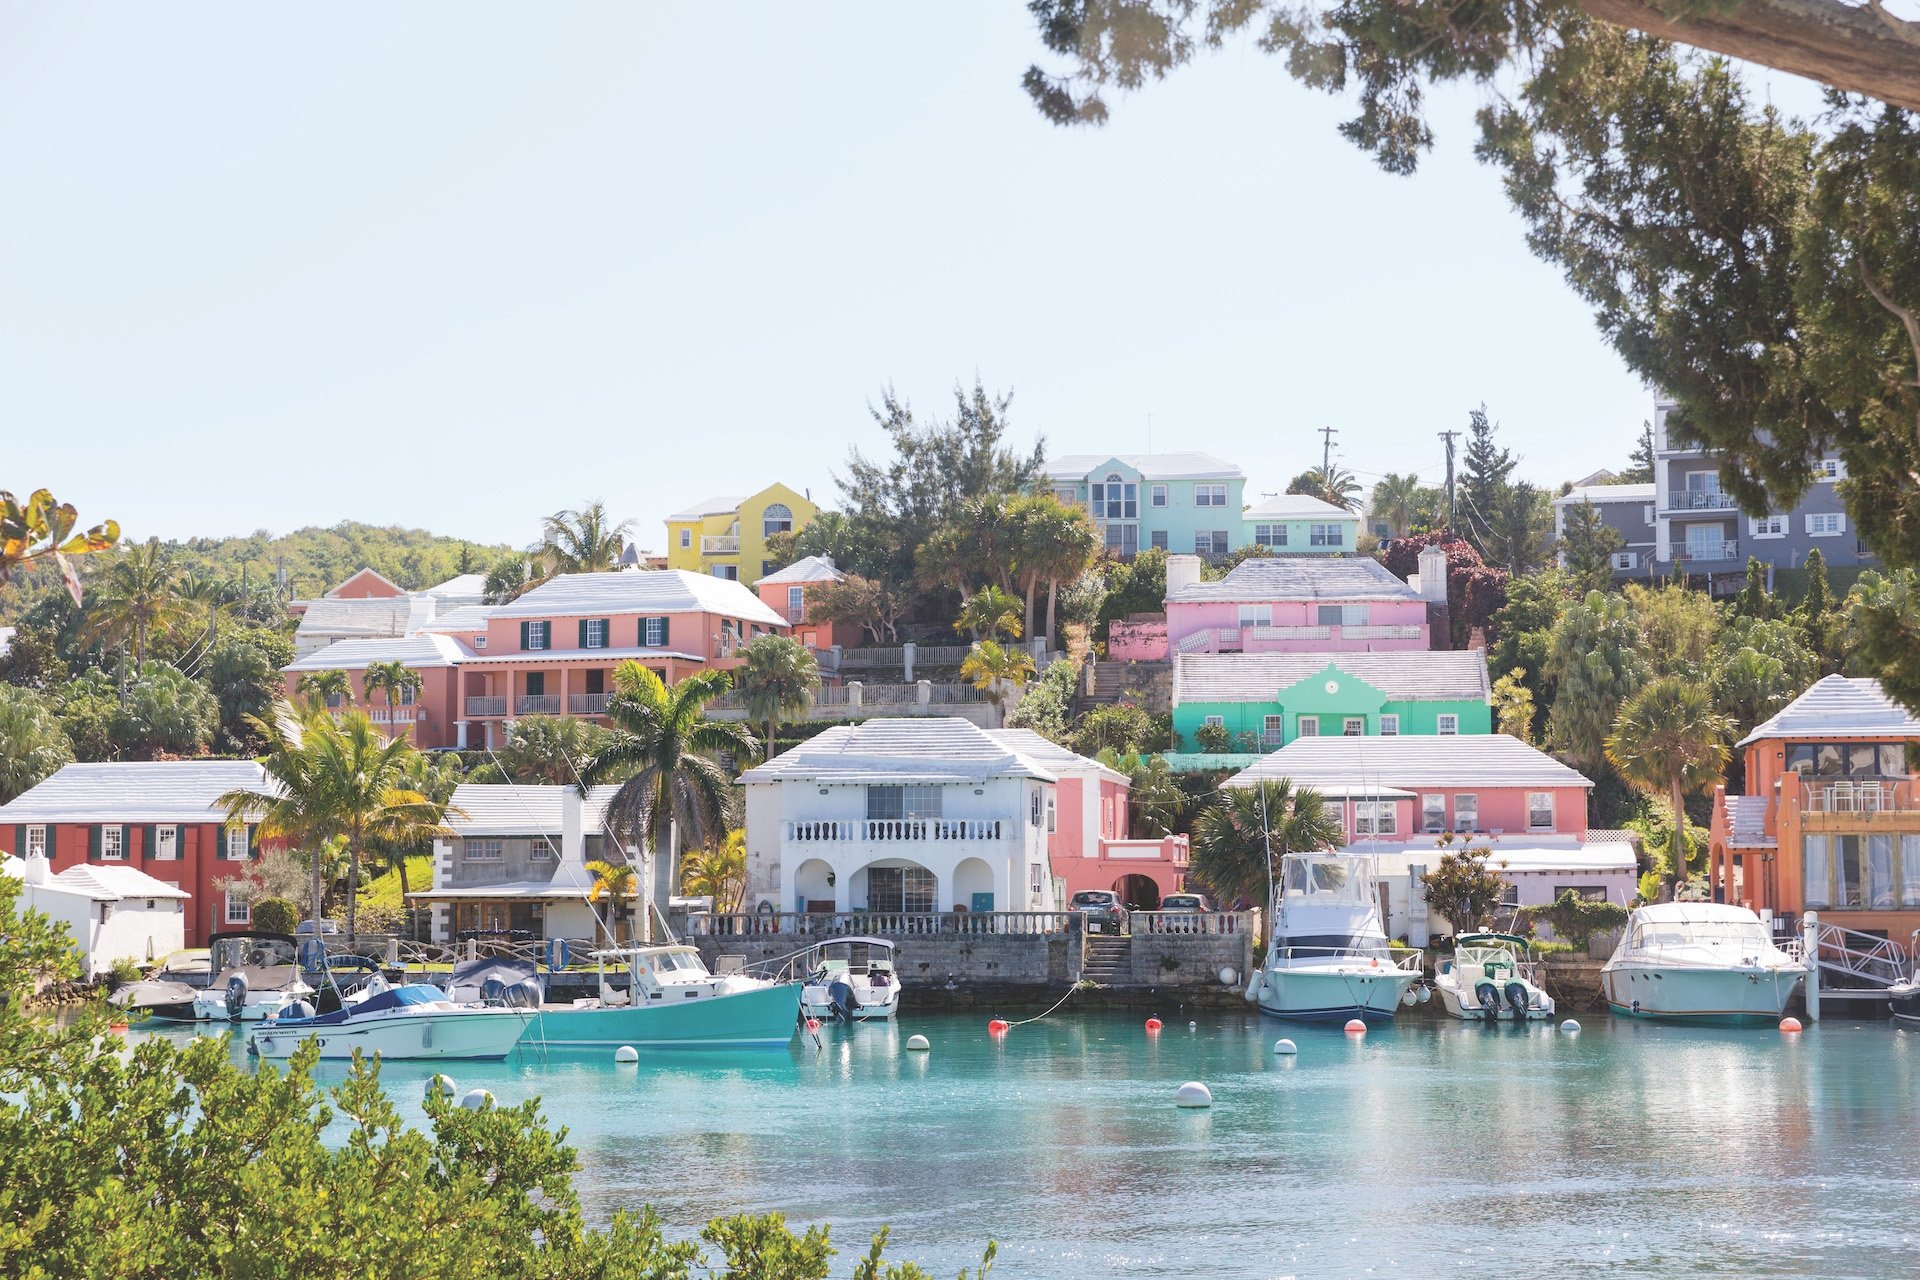 Flatt's Village in Bermuda